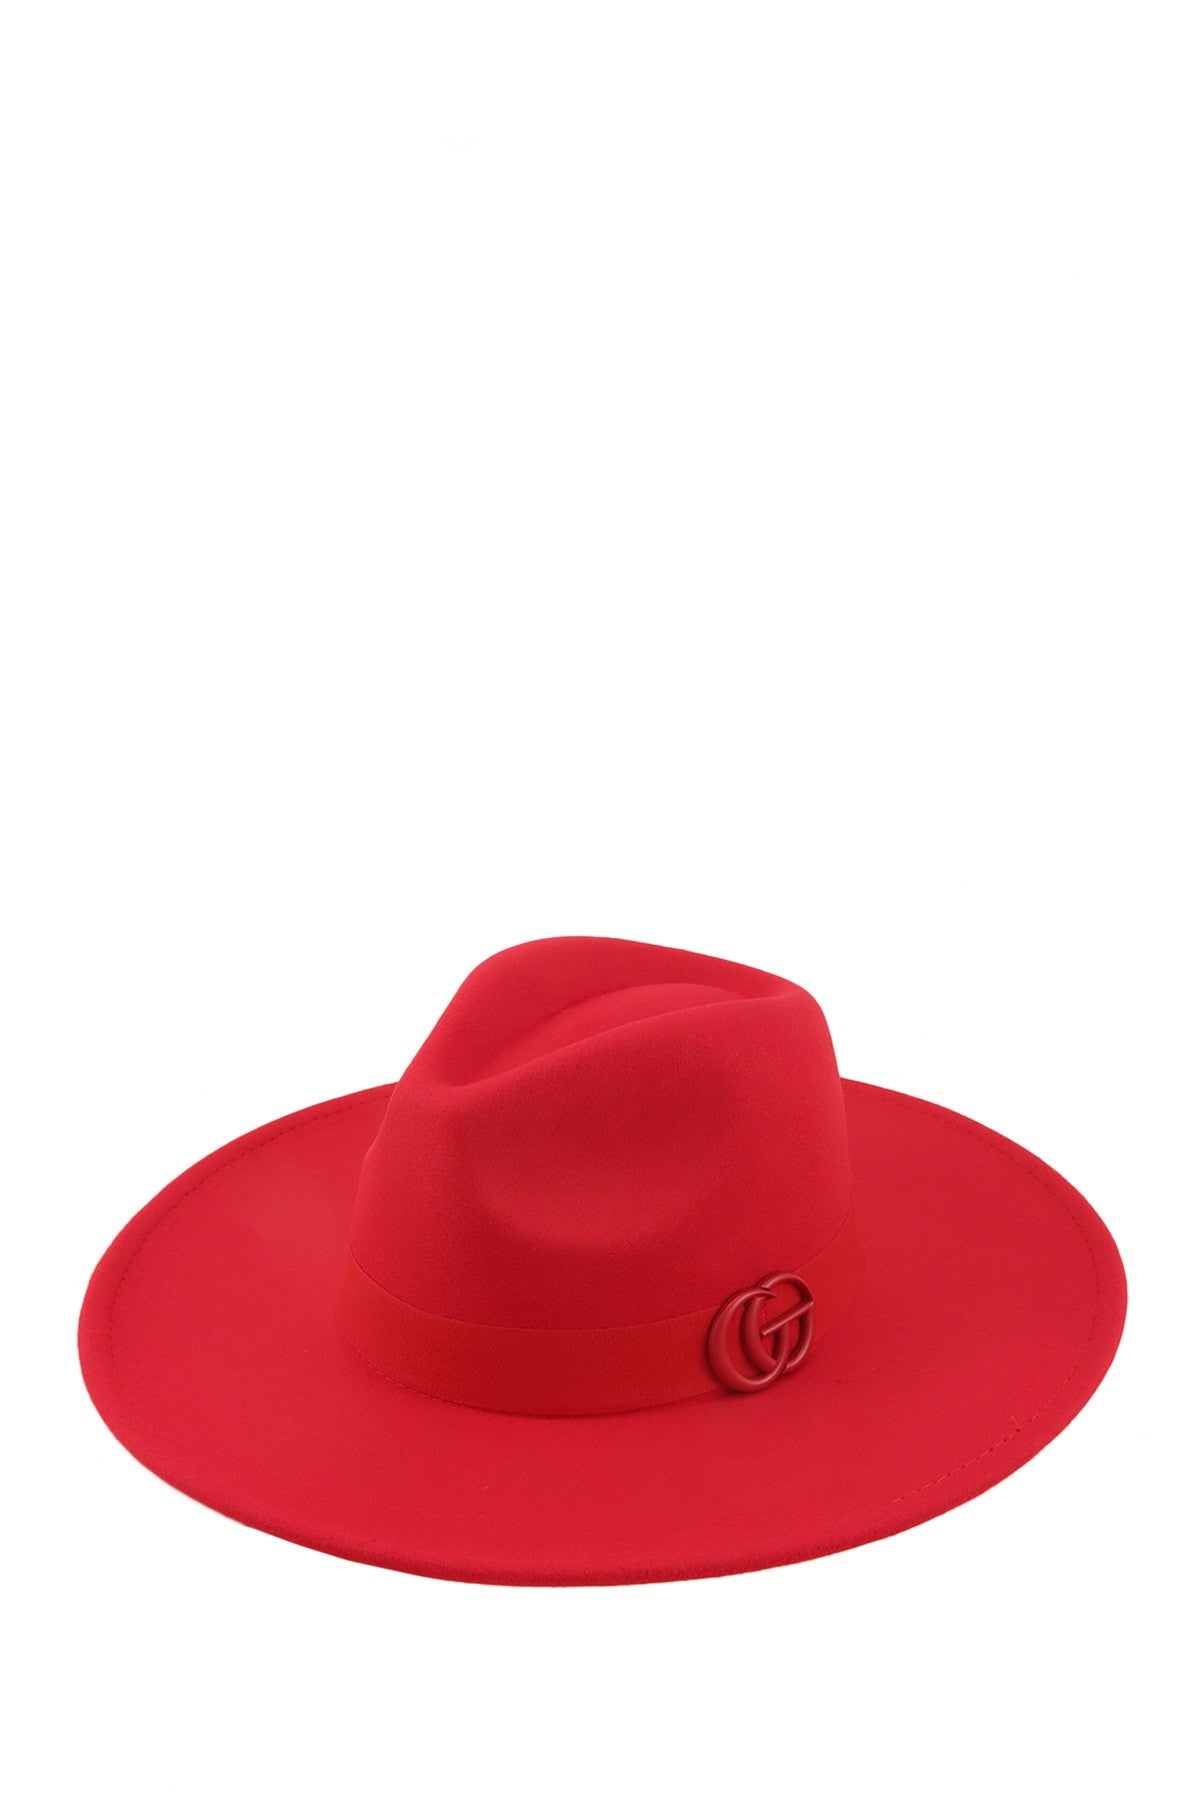 Enamel Coated GO Charm Fedora Hat